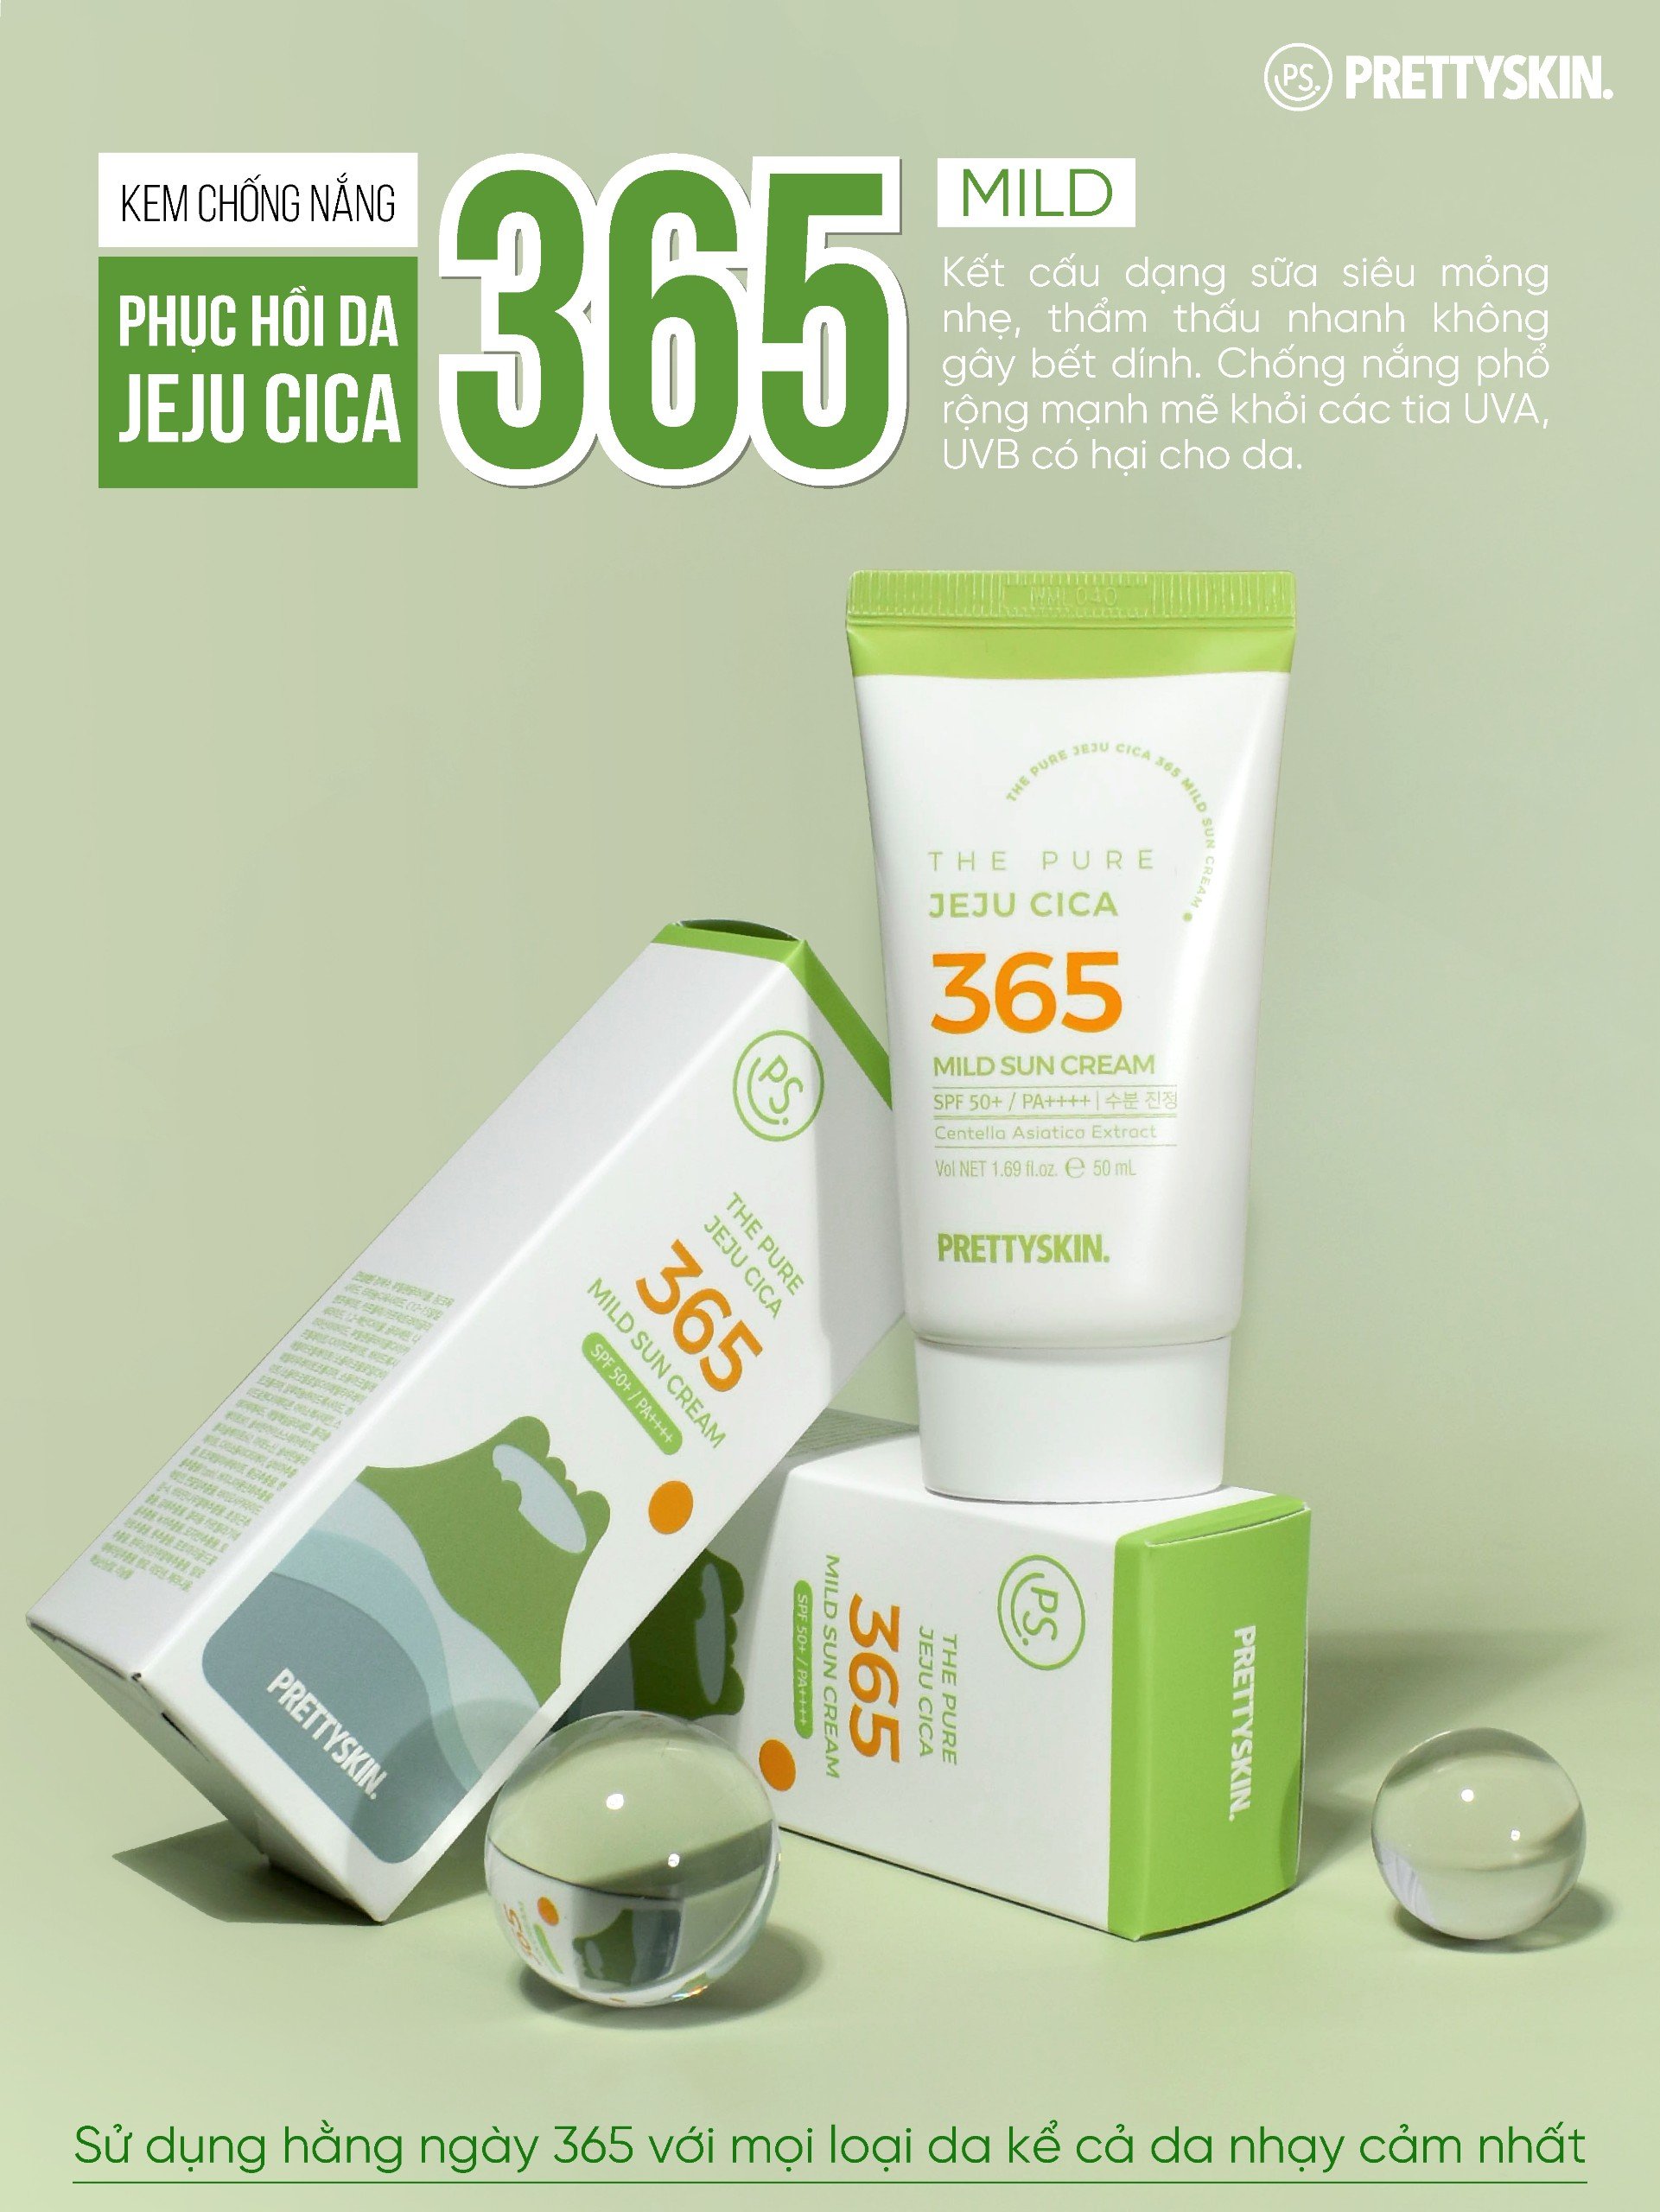 Kem chống nắng nâng tông, kháng nước 365 Pretty Skin The Pure Jeju Cica 365 Mild Sun Cream